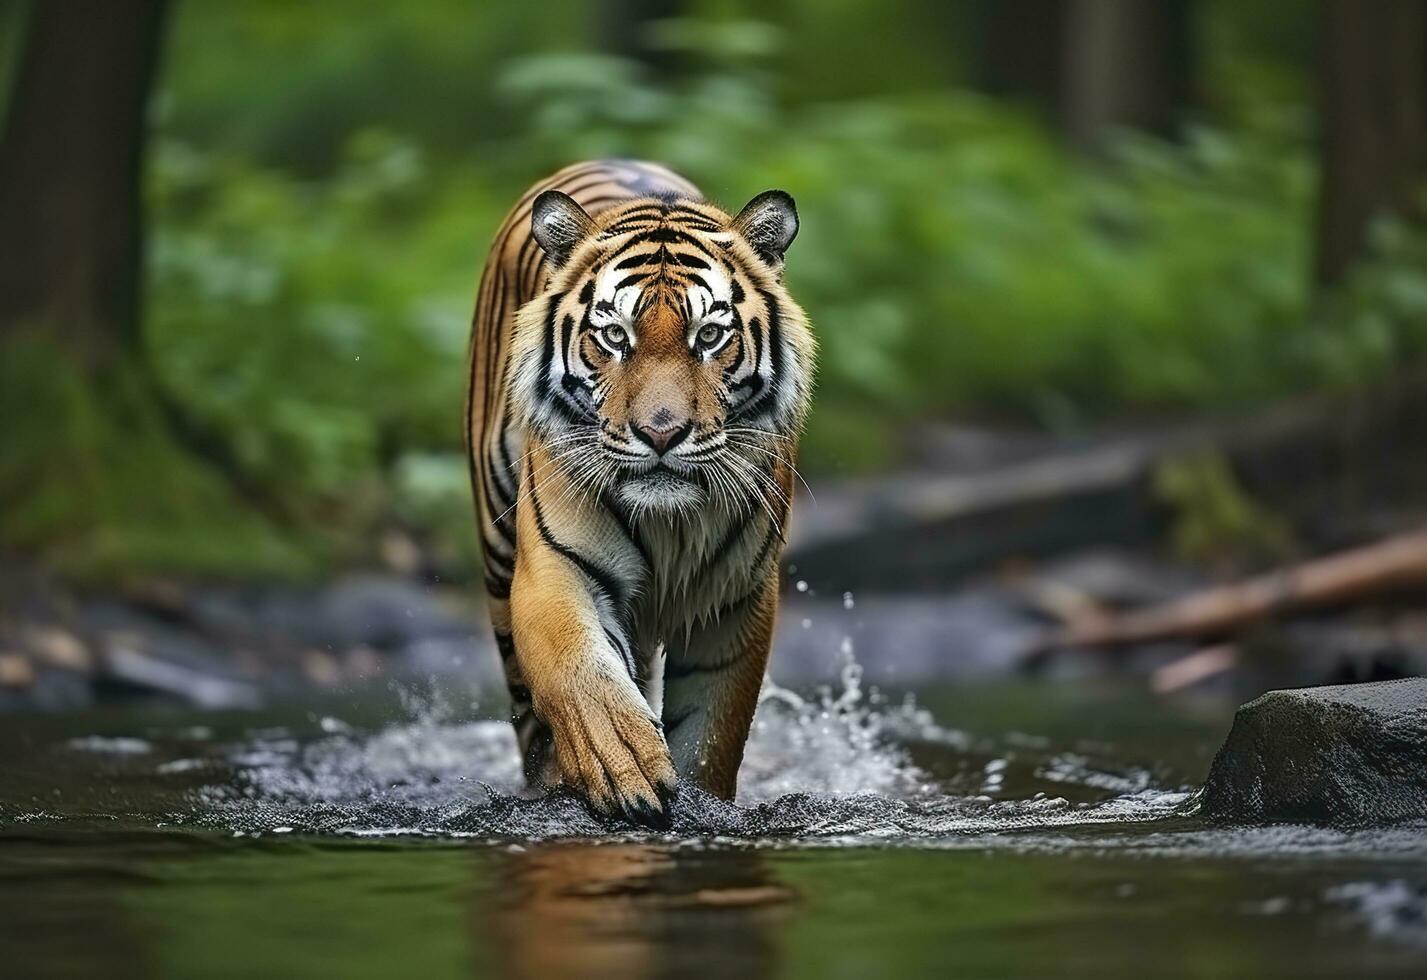 amur tijger wandelen in de water. gevaarlijk dier. dier in een groen Woud stroom. generatief ai foto